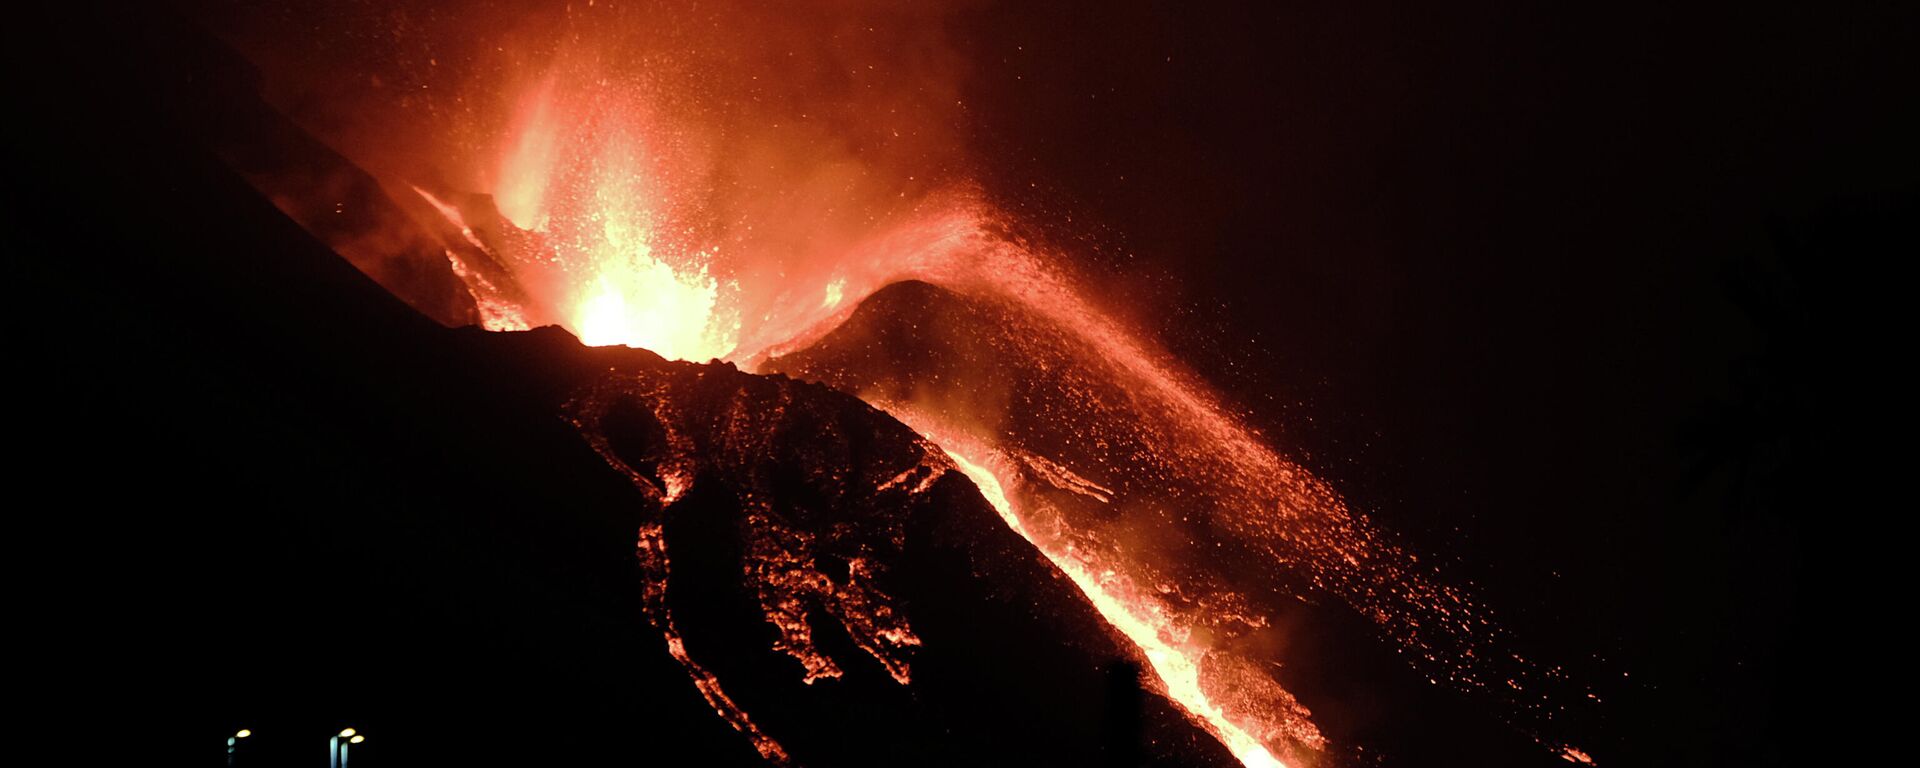 Ерупција вулкана на острву Ла Палма у Шпанији - Sputnik Србија, 1920, 10.10.2021